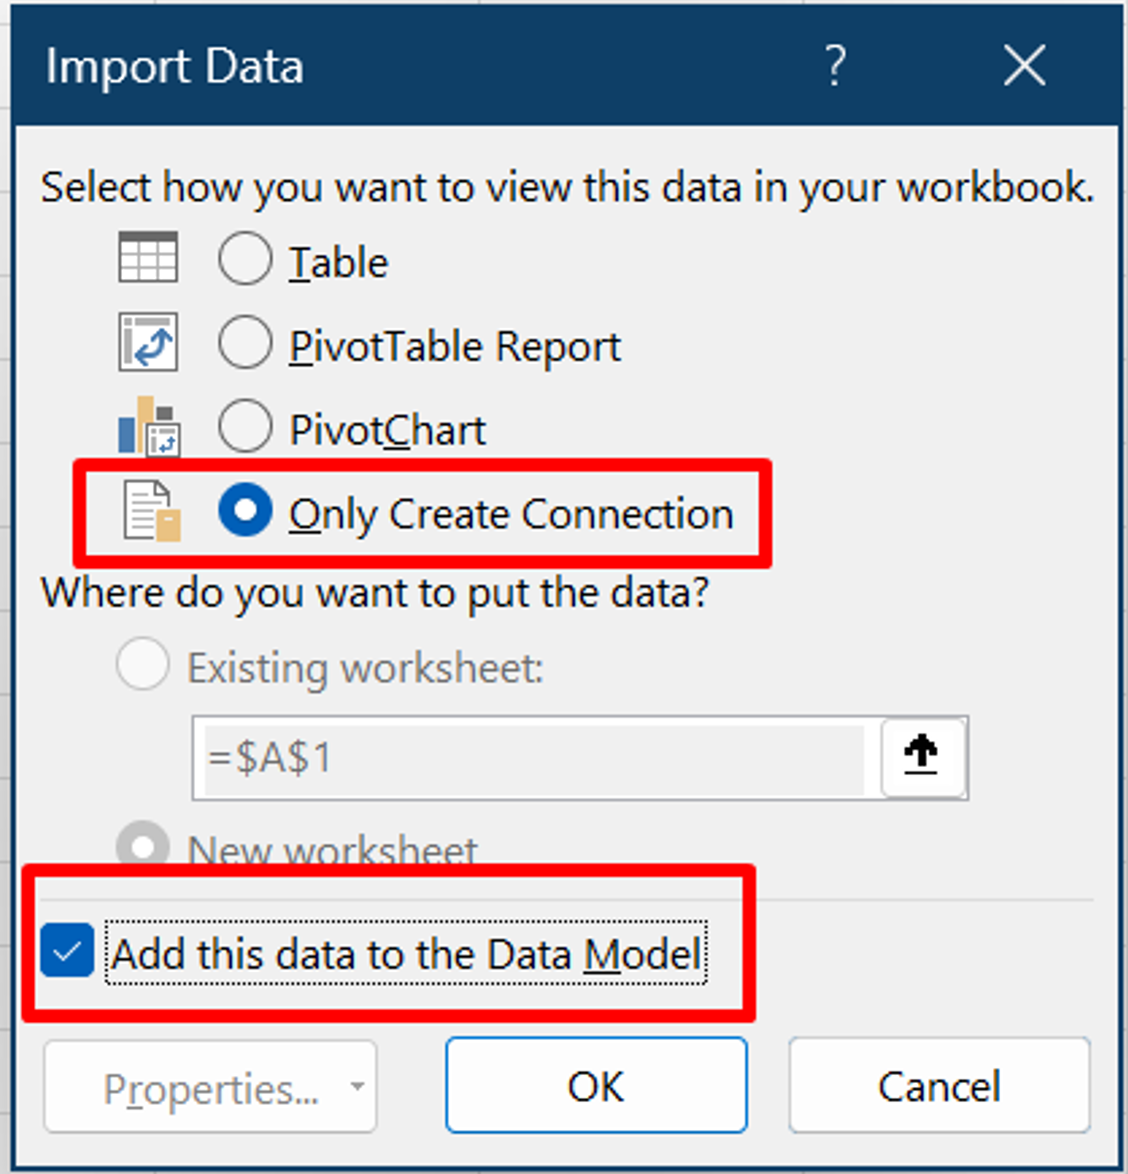 Cuplikan layar jendela Impor Data, dengan dua item disorot: Hanya Buat Koneksi ion dan Tambahkan data ini ke Model Data.